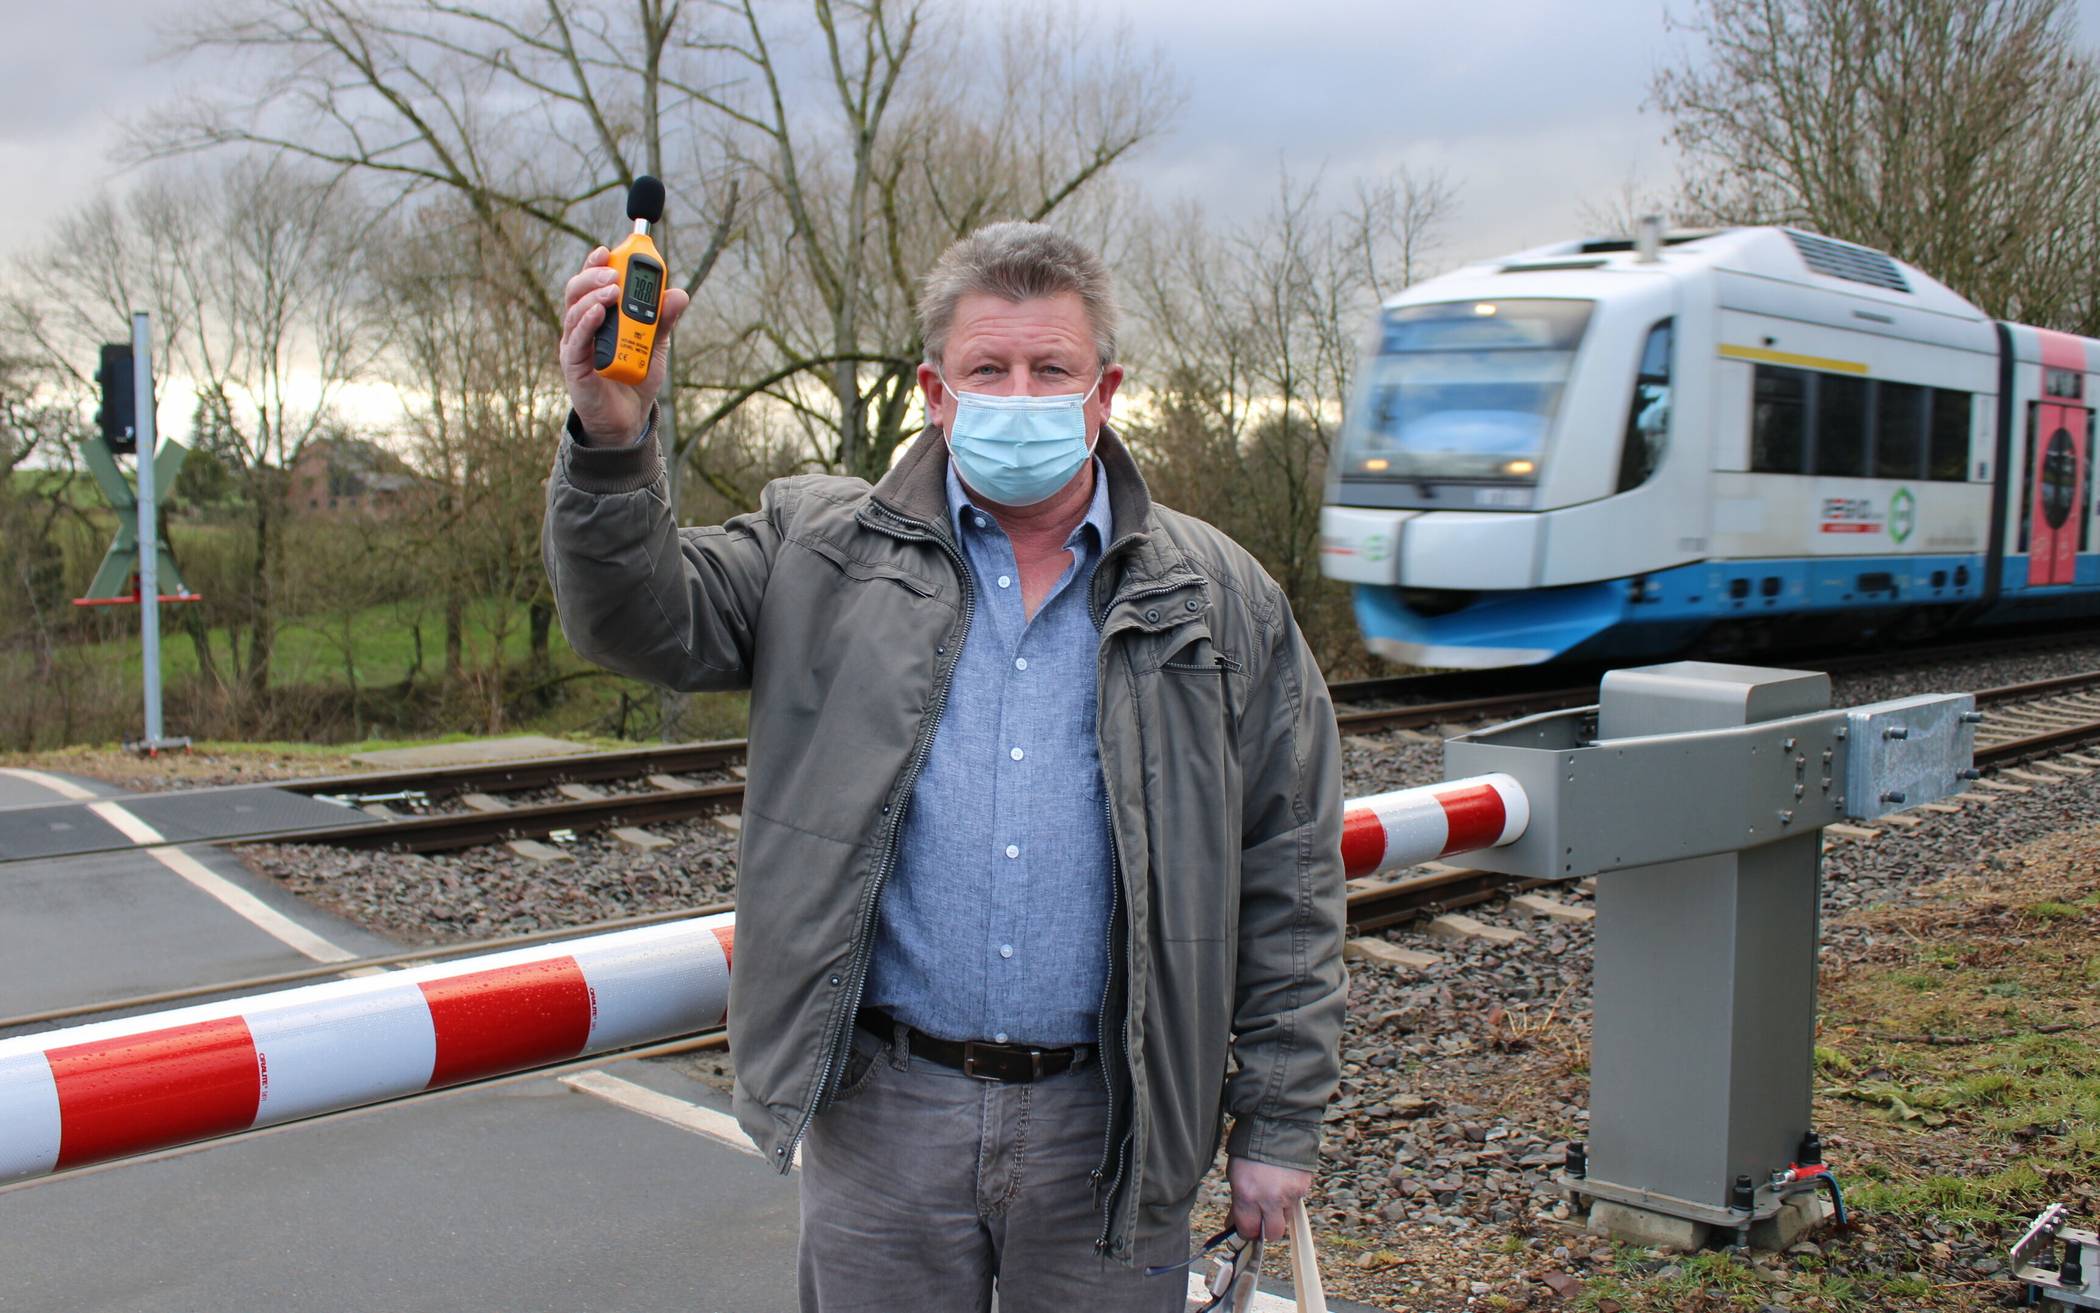  Gemessen und für zu laut befunden: Uwe Althaus mit einem Schallpegelmessgerät am Bahnübergang in der Siedlung Röttgen.   